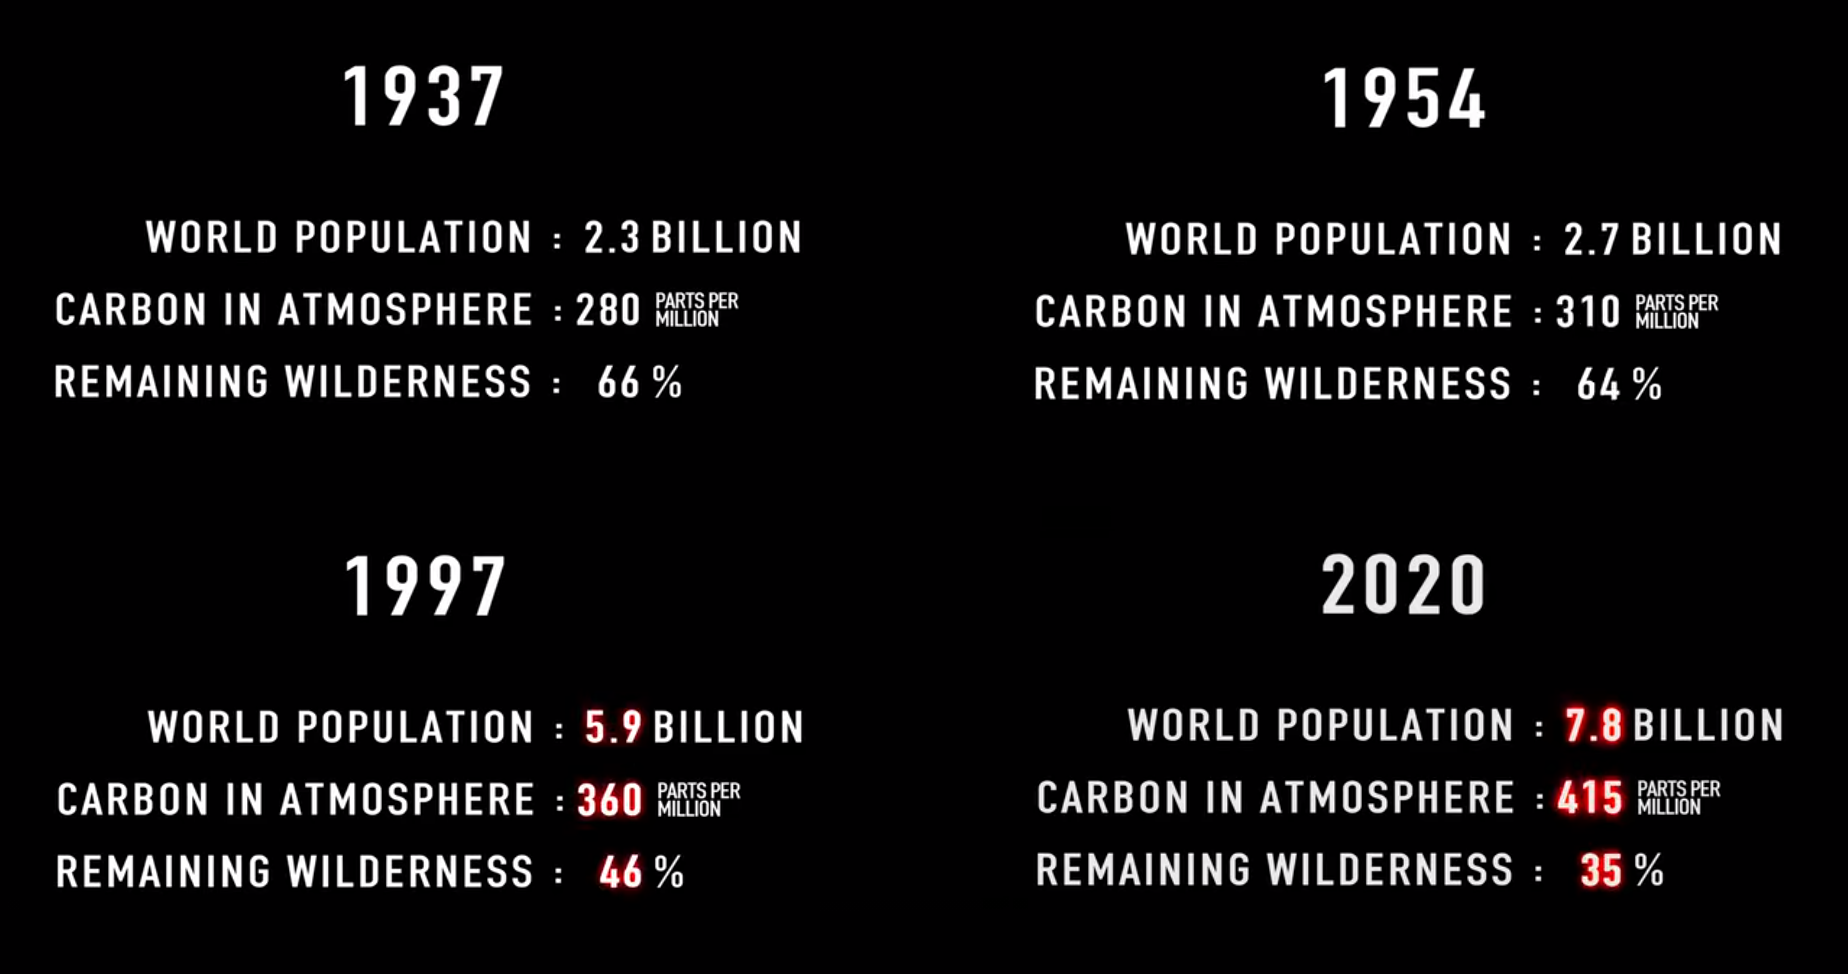 A Föld népességének, a légkör szén-dioxid-tartalmának és az érintetlen vadon arányának változása Attenborough élete alatt